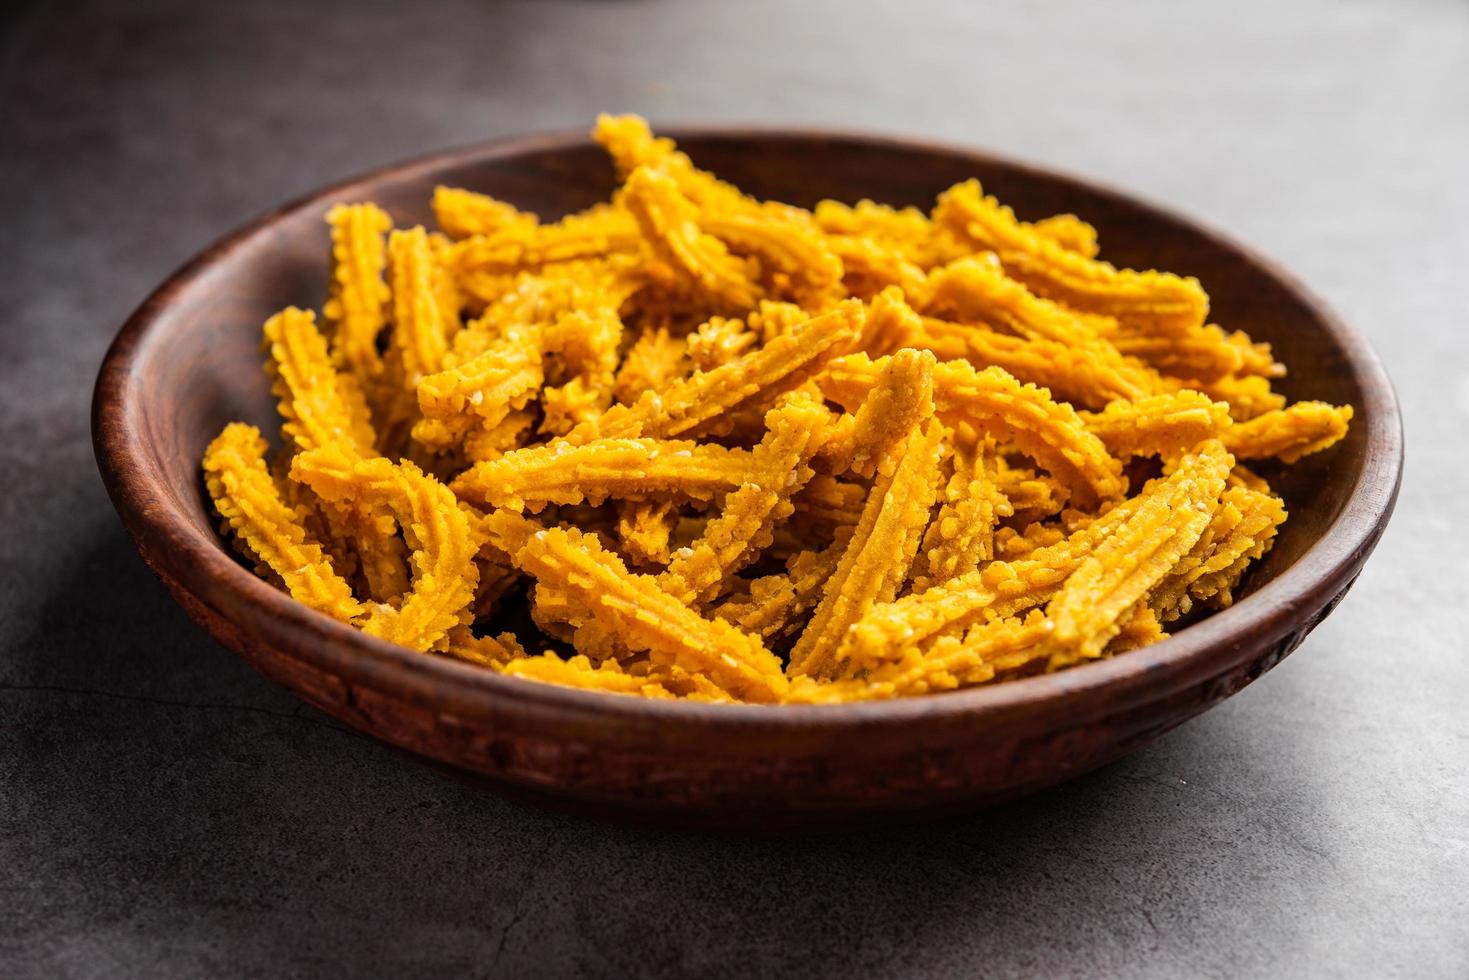 bhajni chakli pinnar eller knaprig murukku mellanmål tillverkad använder sig av diwali festival, favorit gumlar mat foto